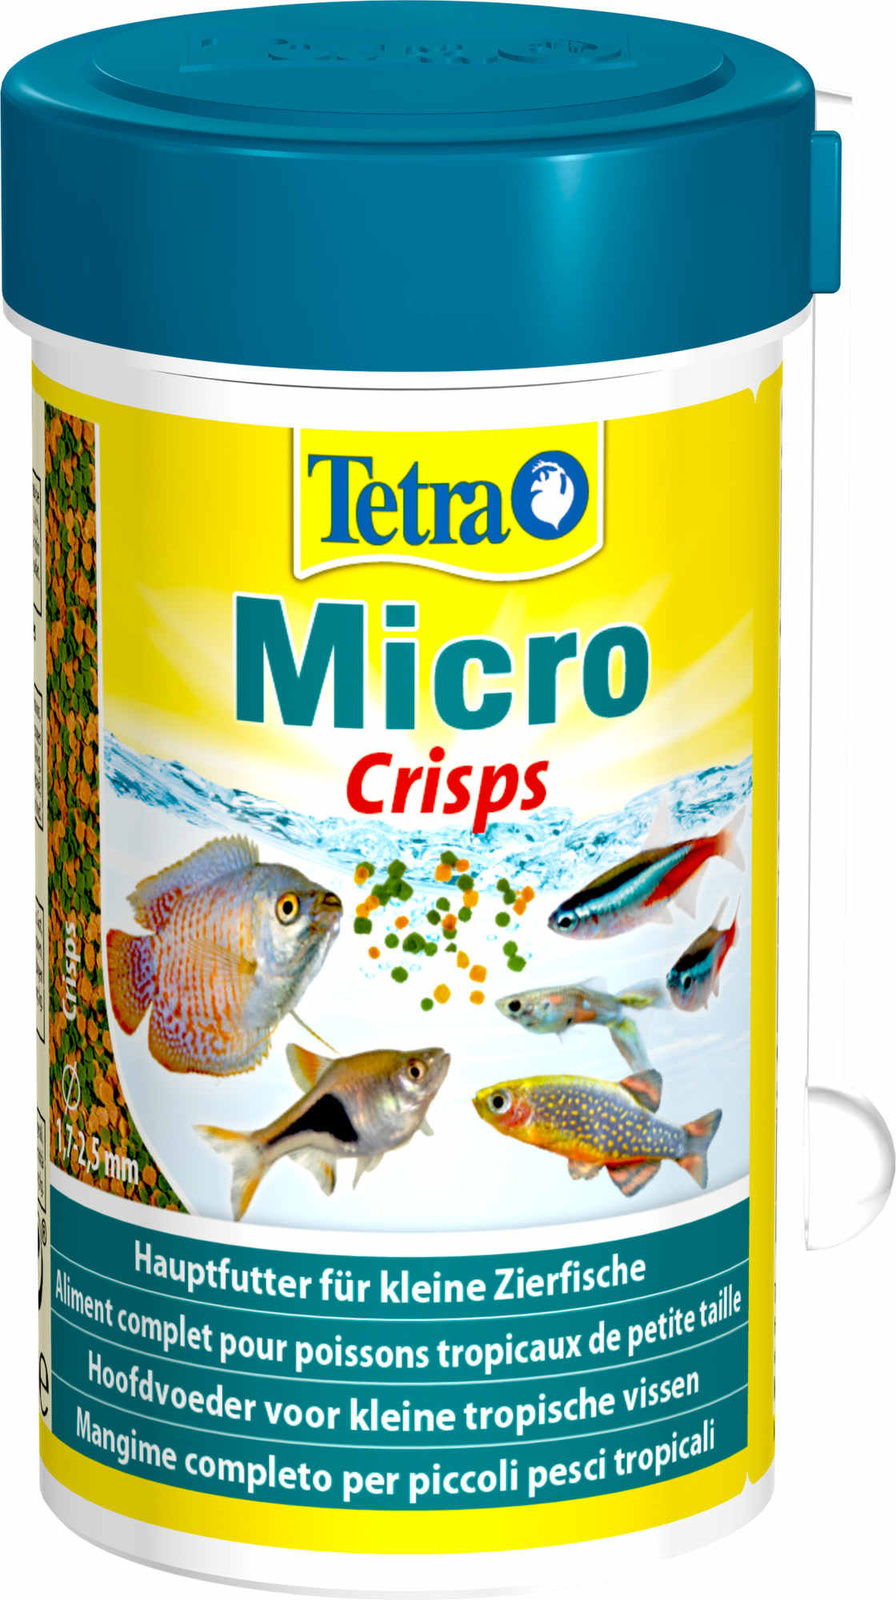 Tetra (корма) Tetra (корма) корм для для всех видов мелких рыб, микрочипсы (39 г) tetra корма tetra корма корм для всех видов рыб мелкие гранулы 45 г